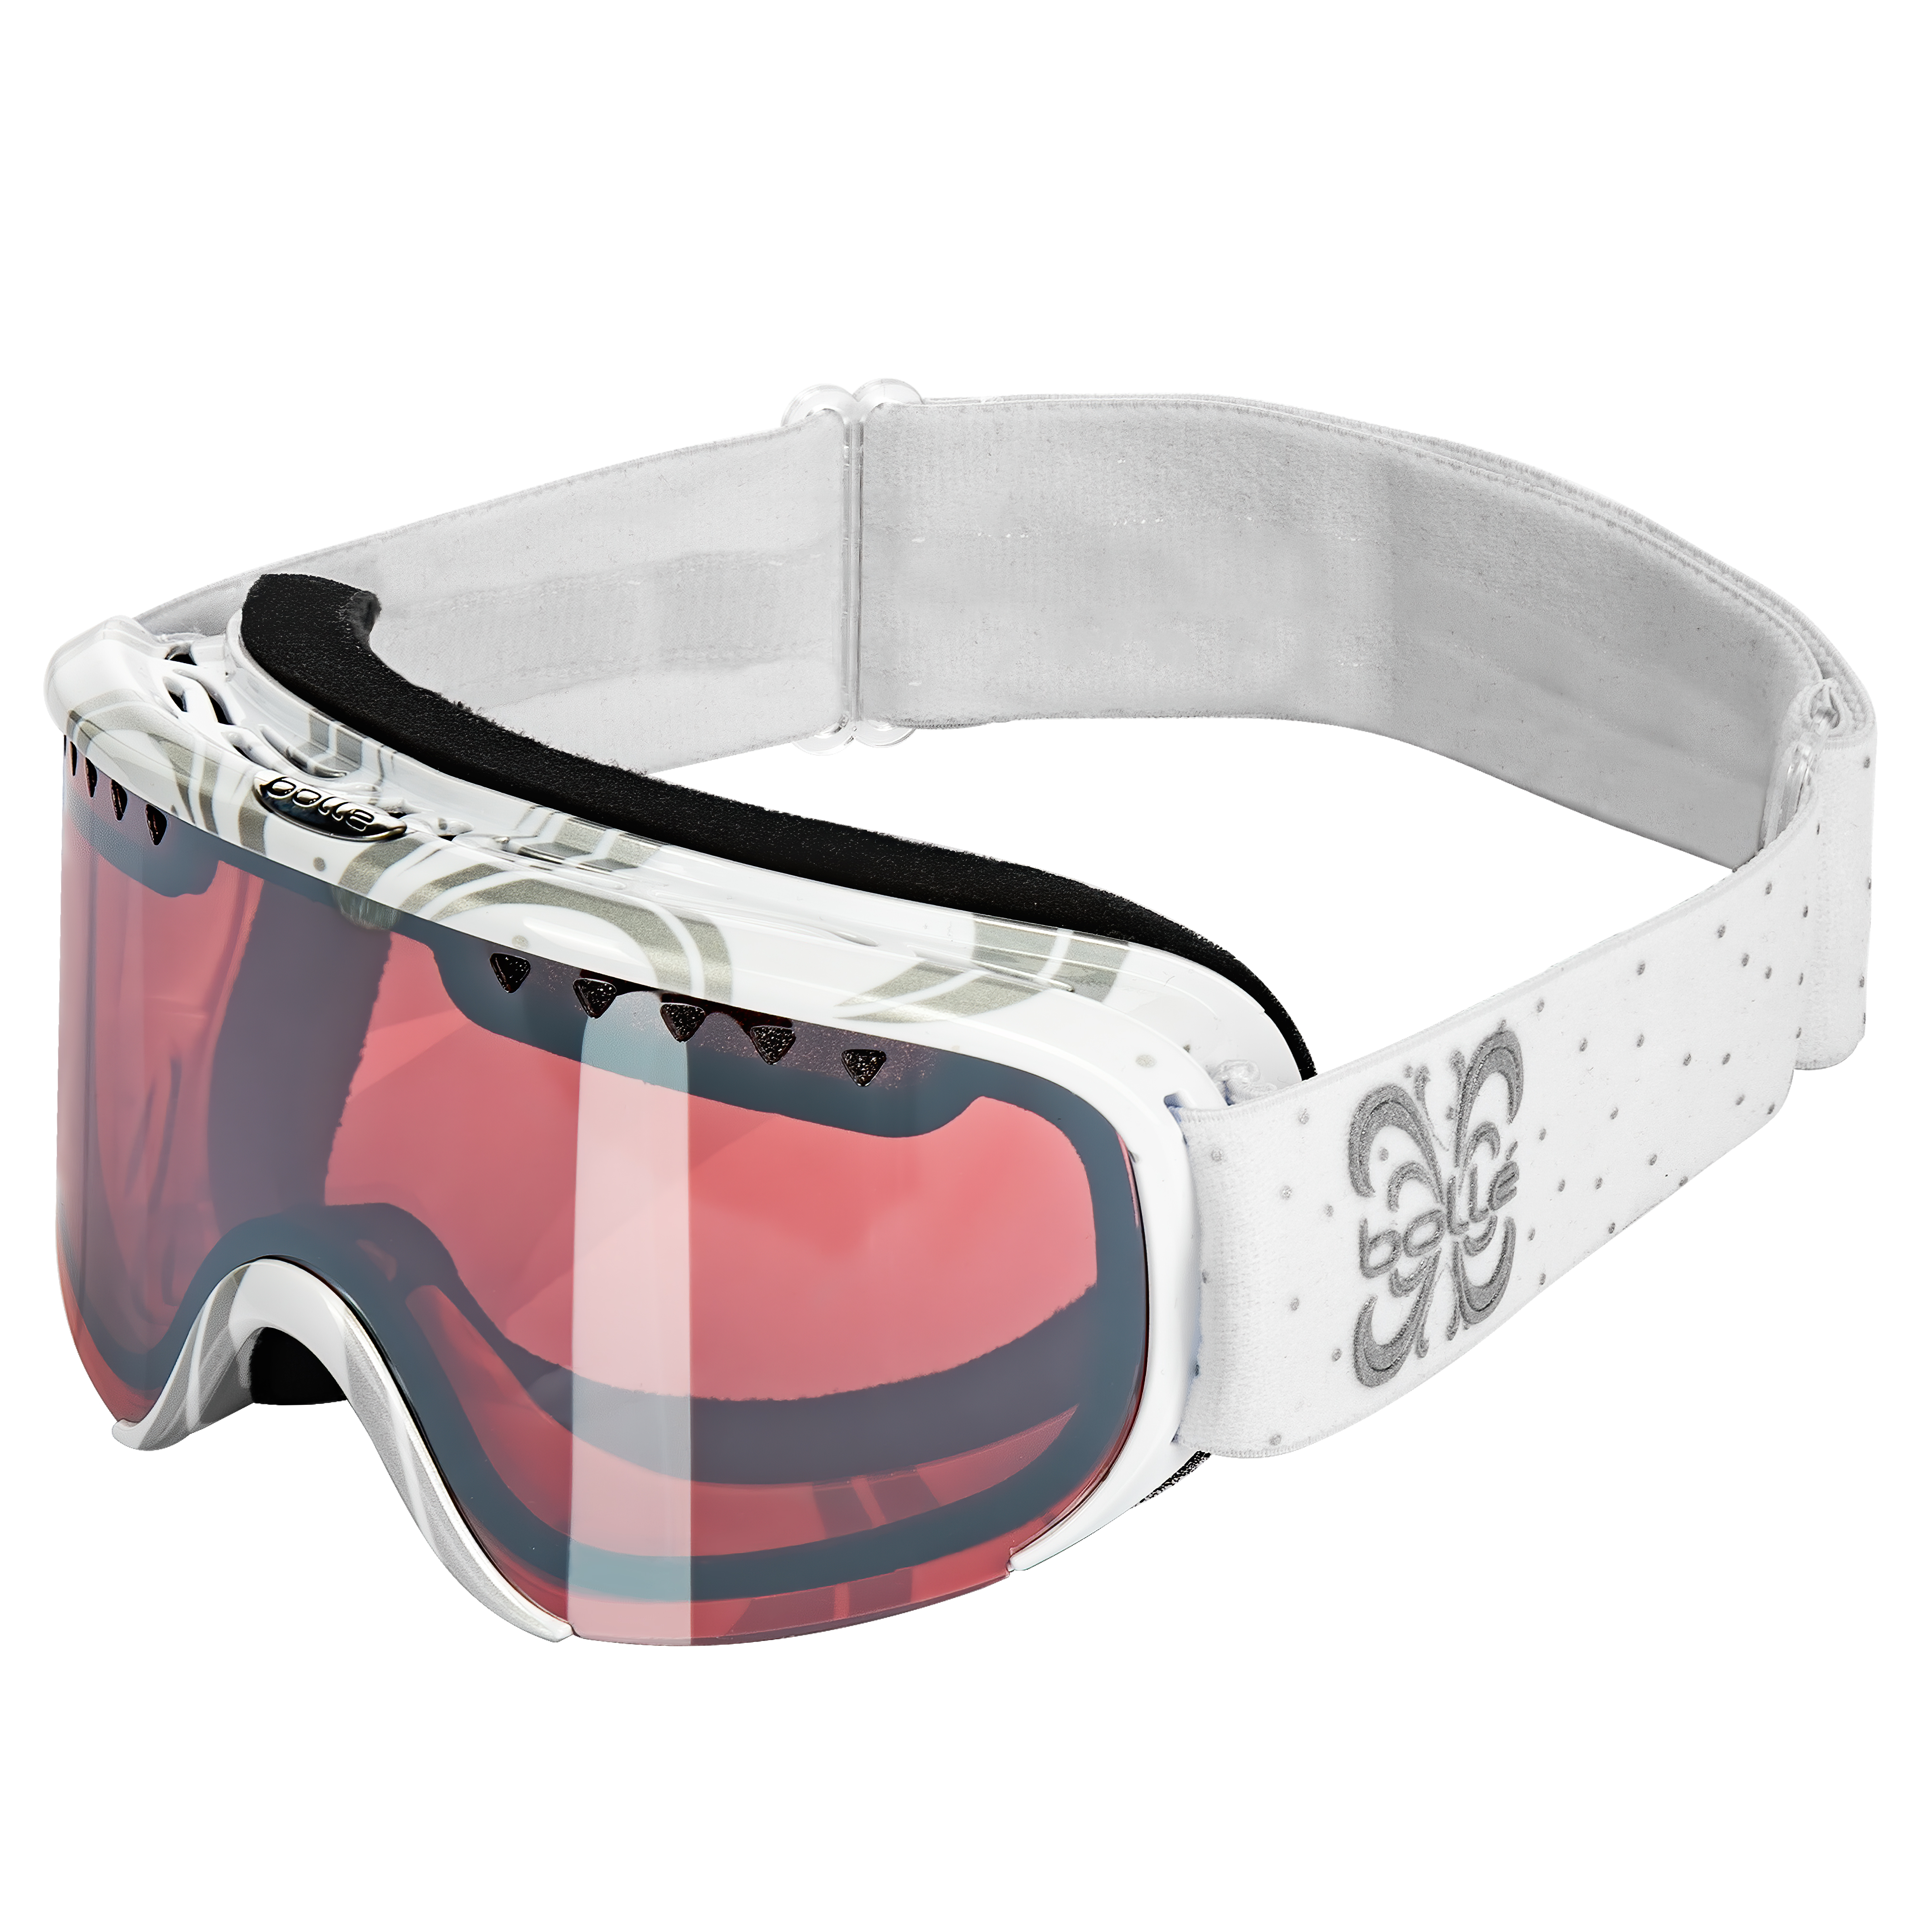 Цена горнолыжные маски с защитой от запотевания Bolle Scarlett Shiny White Night Vermillon Gun в Киеве